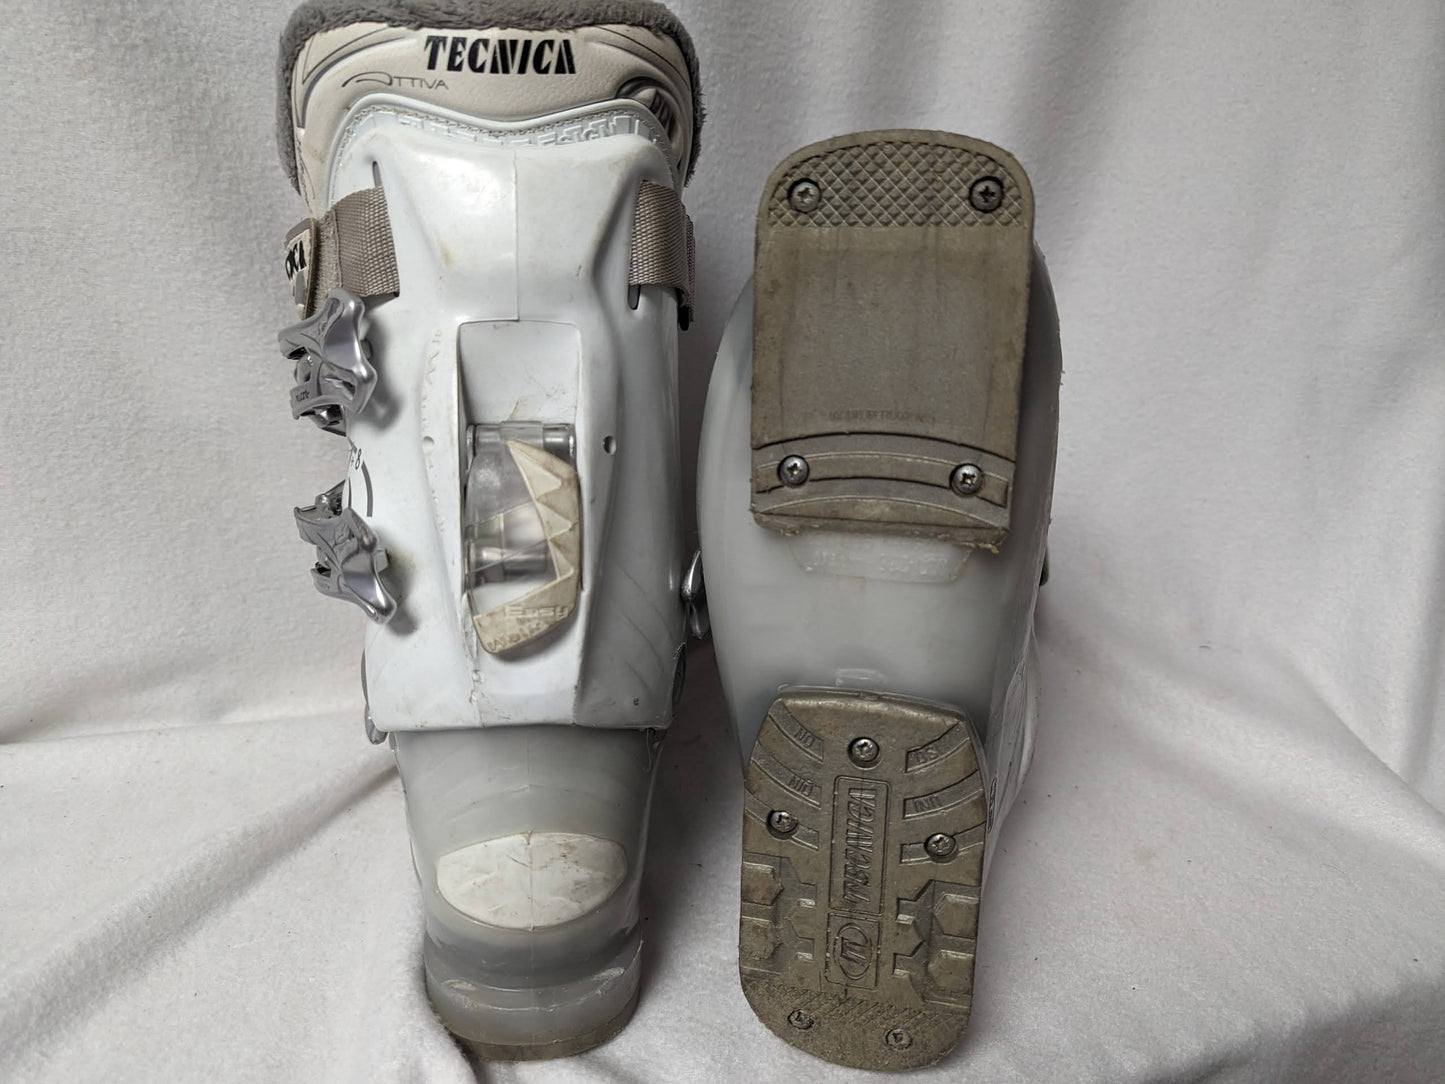 Tecnica Attiva M+8 Women's Ski Boots Size 23.5 Color White Condition Used